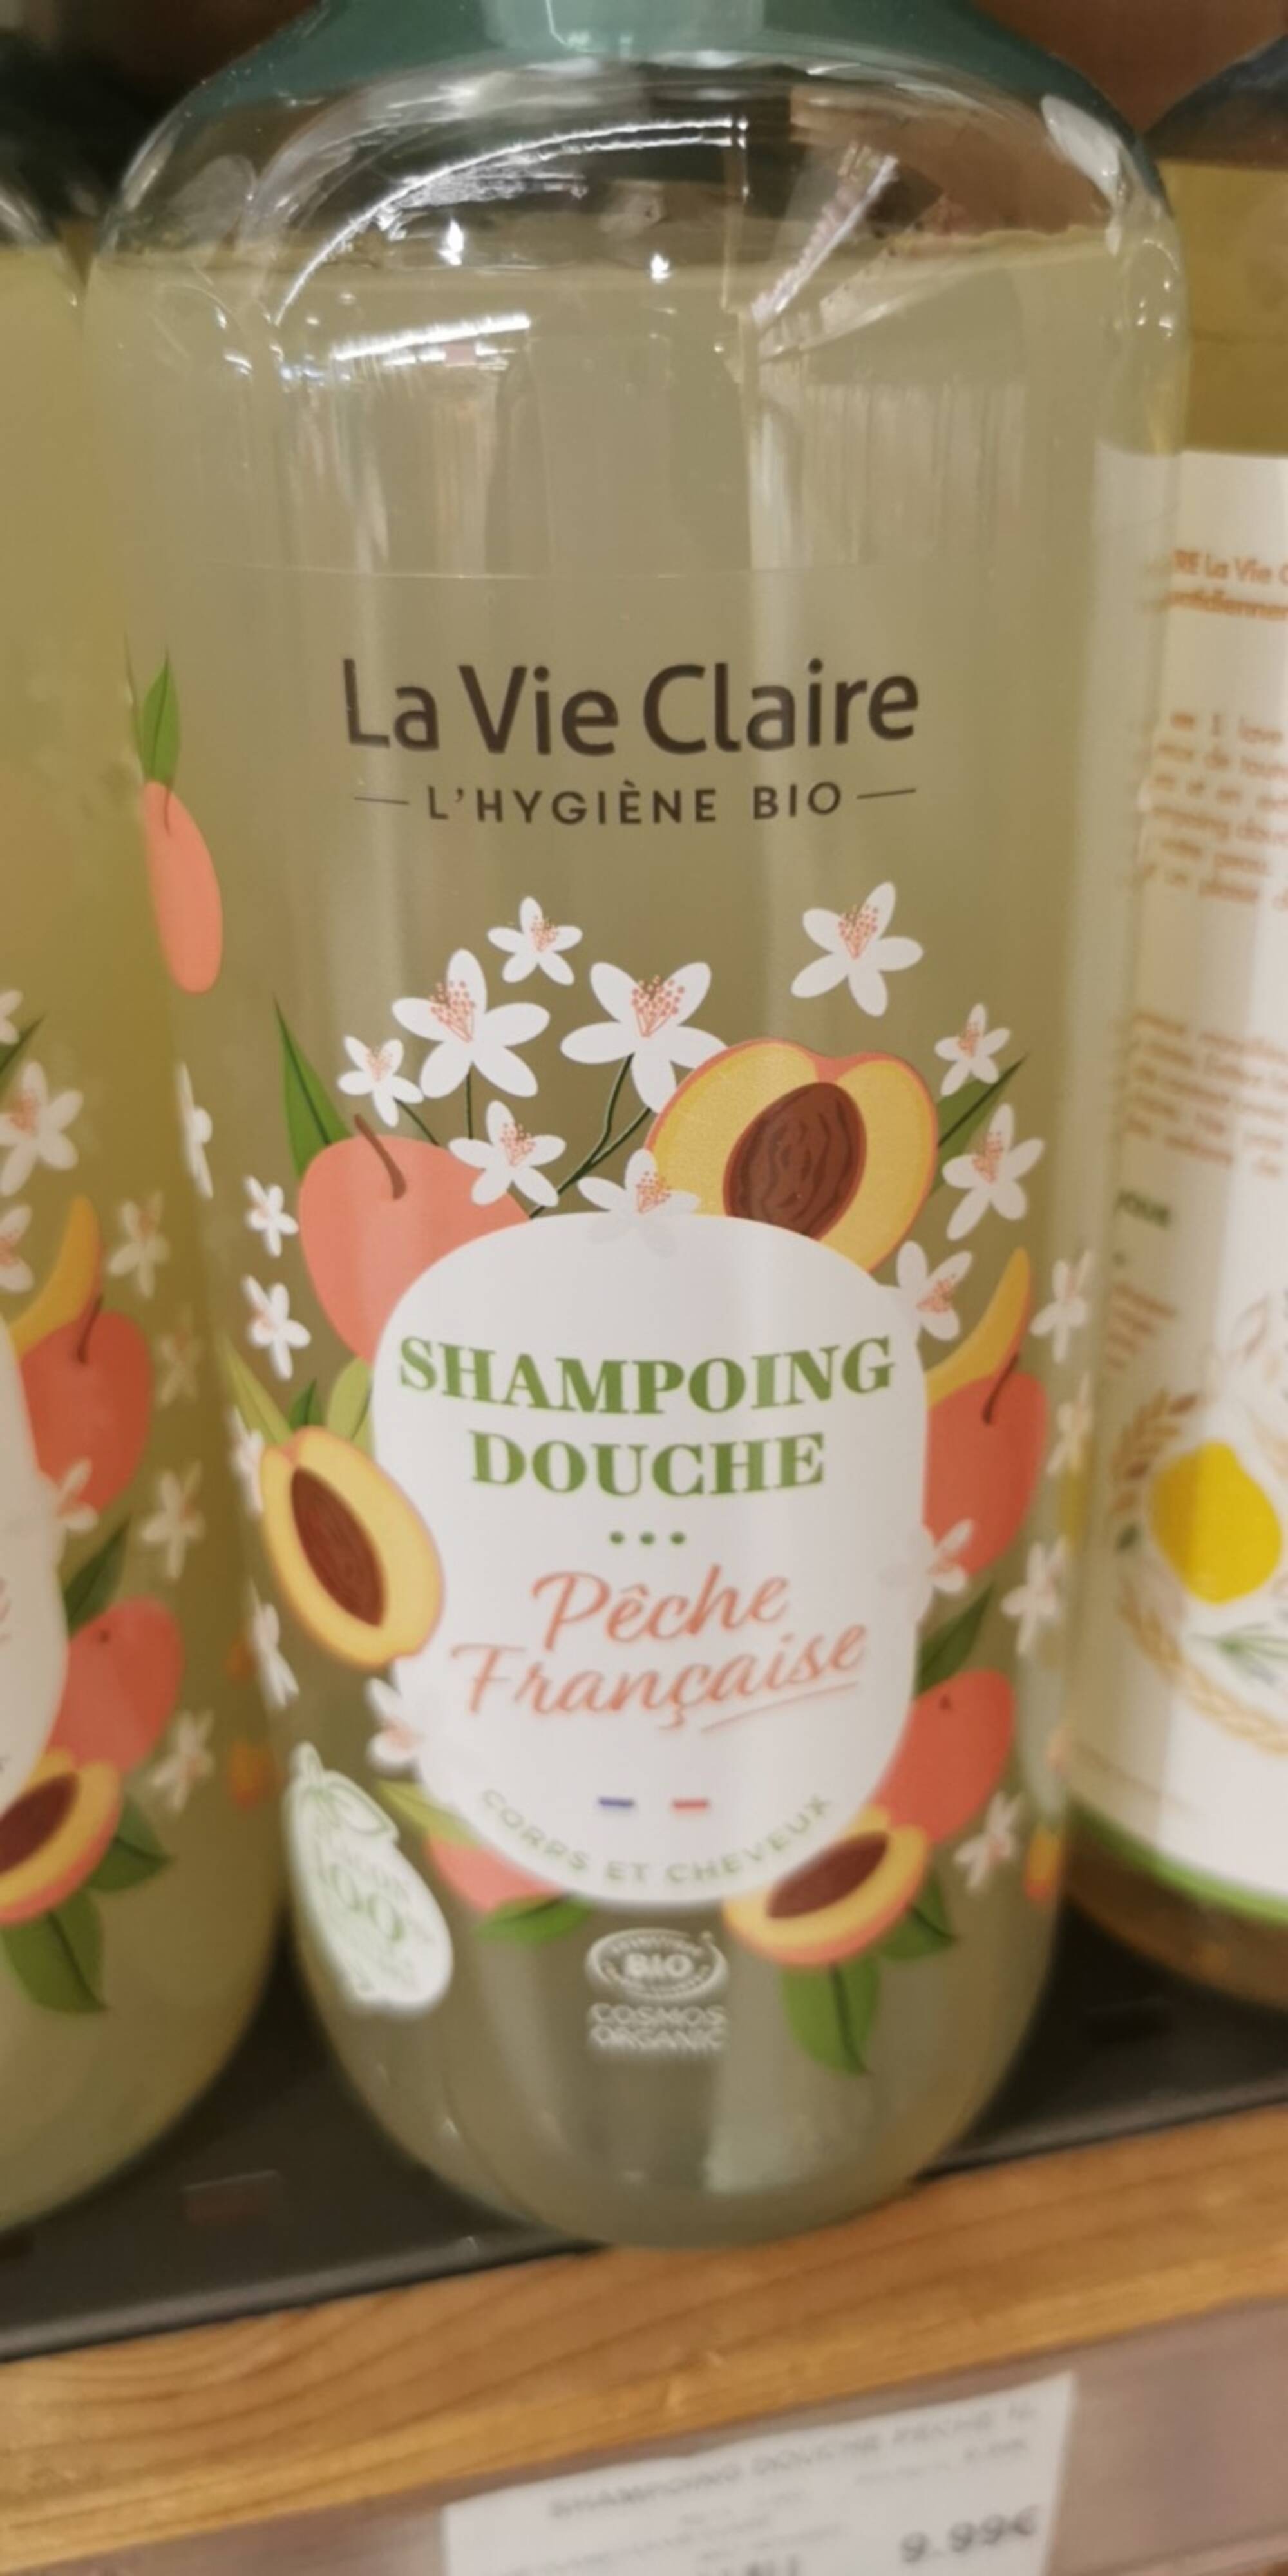 LA VIE CLAIRE - Shampooing douche pêche française